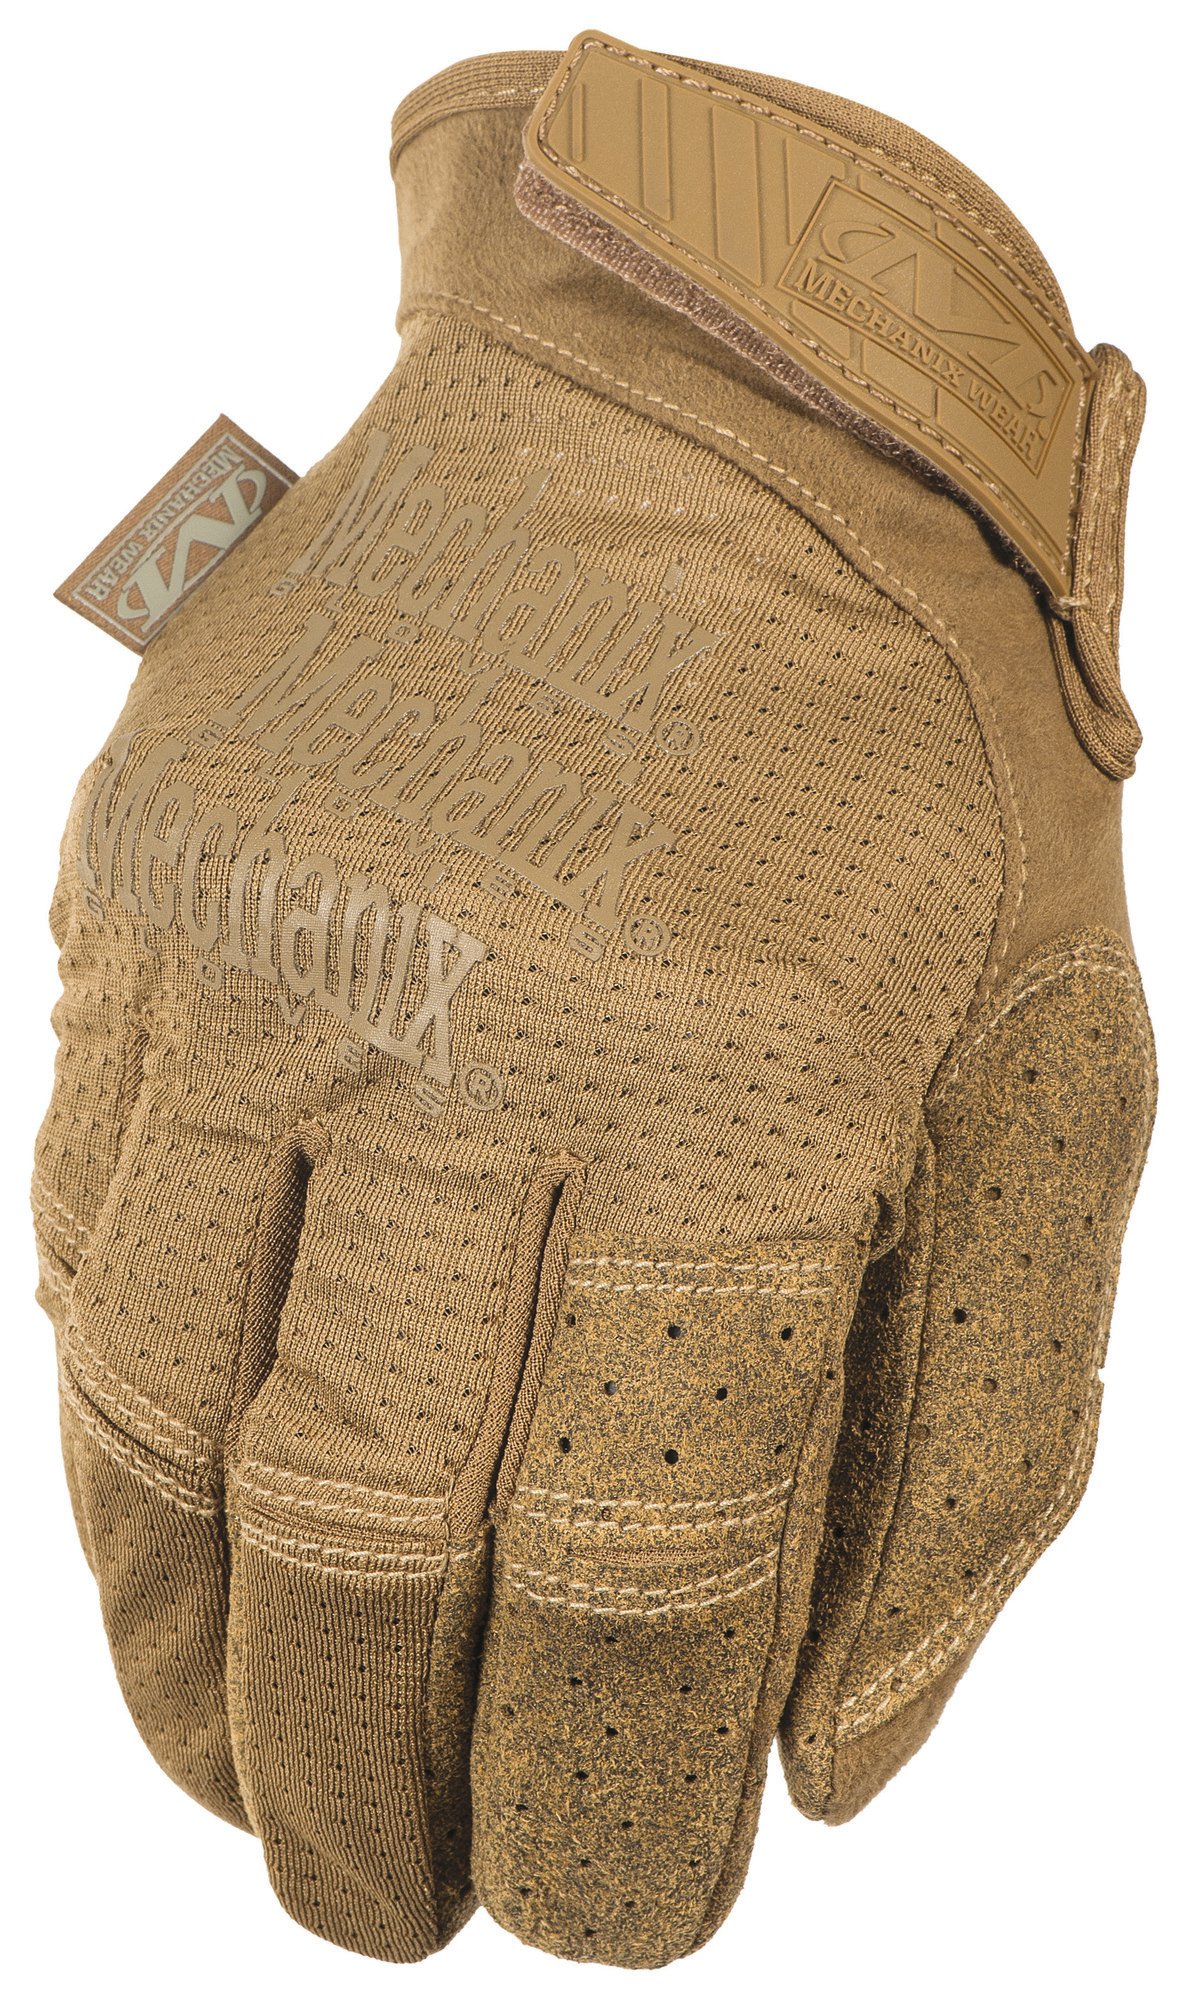 MECHANIX priedušné pracovné rukavice Specialty Vent - Coyote S/8